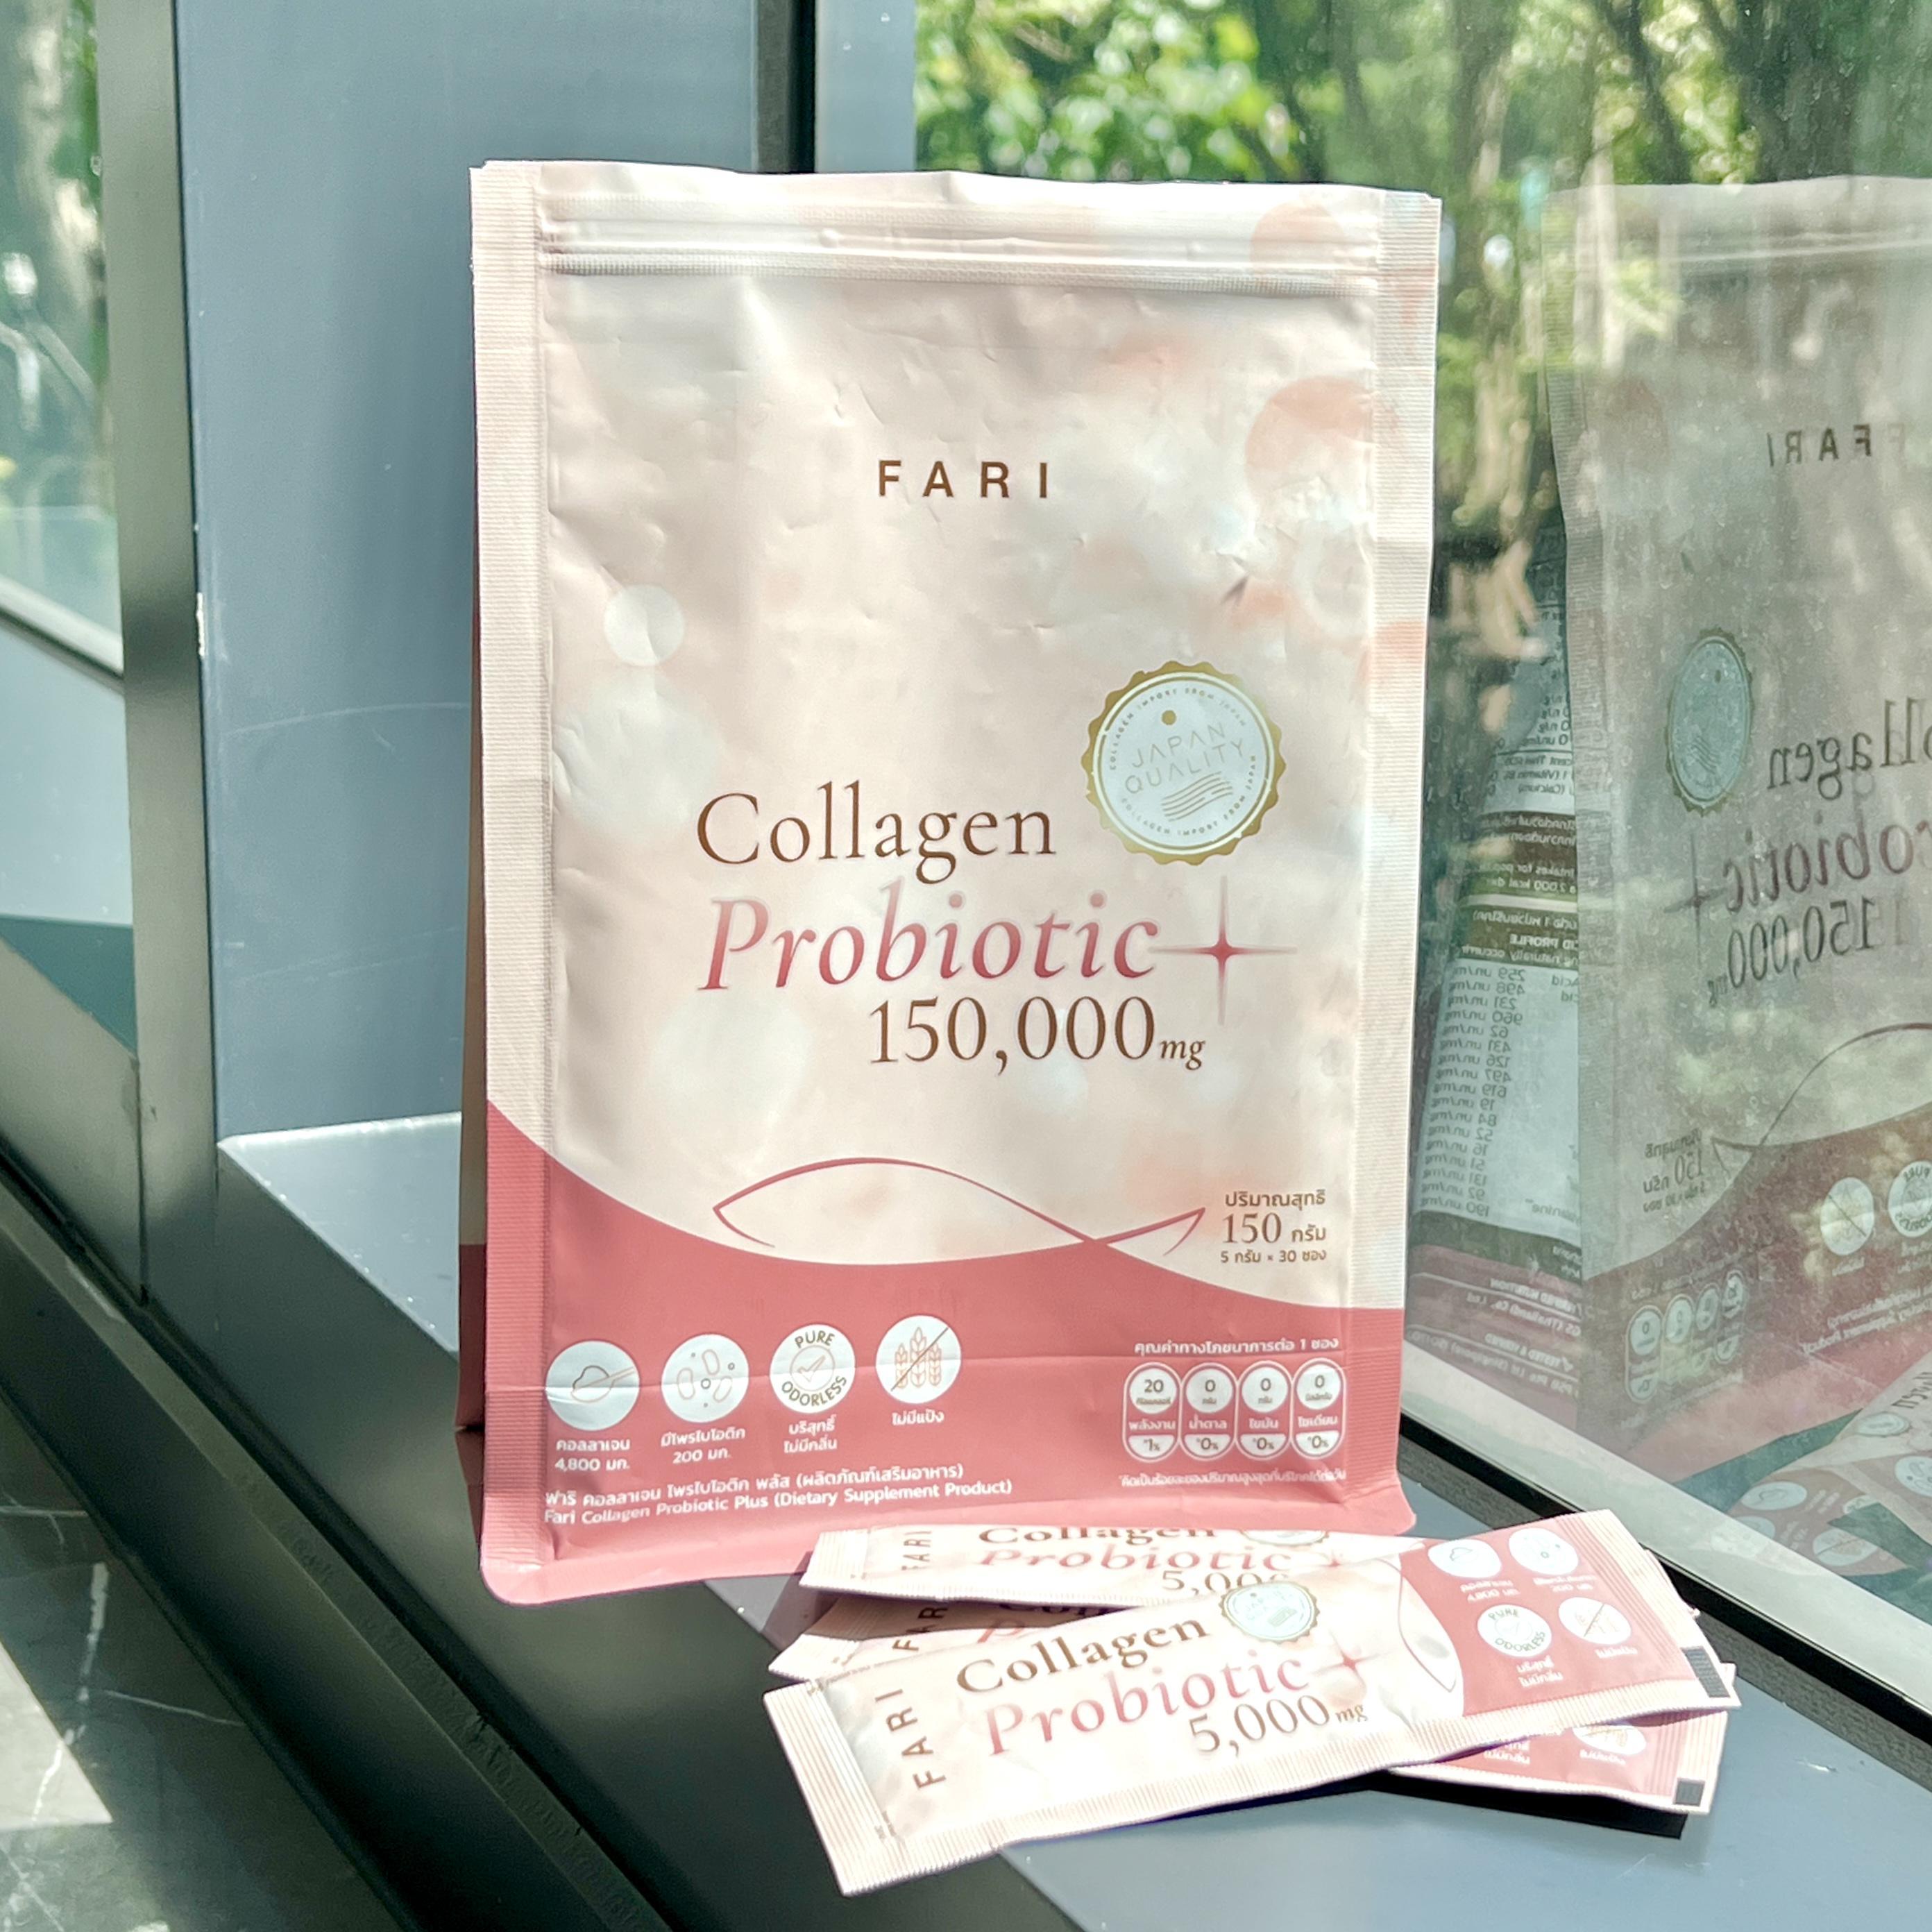 ภาพหน้าปก คอลลาเจนมีหมื่นยี่ห้อ แต่ไนซ์เลือกคอลลาเจน  ของ FARI Collagen สูตร Probiotic  NOกลิ่นคาว ดื่มง่าย! พกพาง่าย!  ที่:2